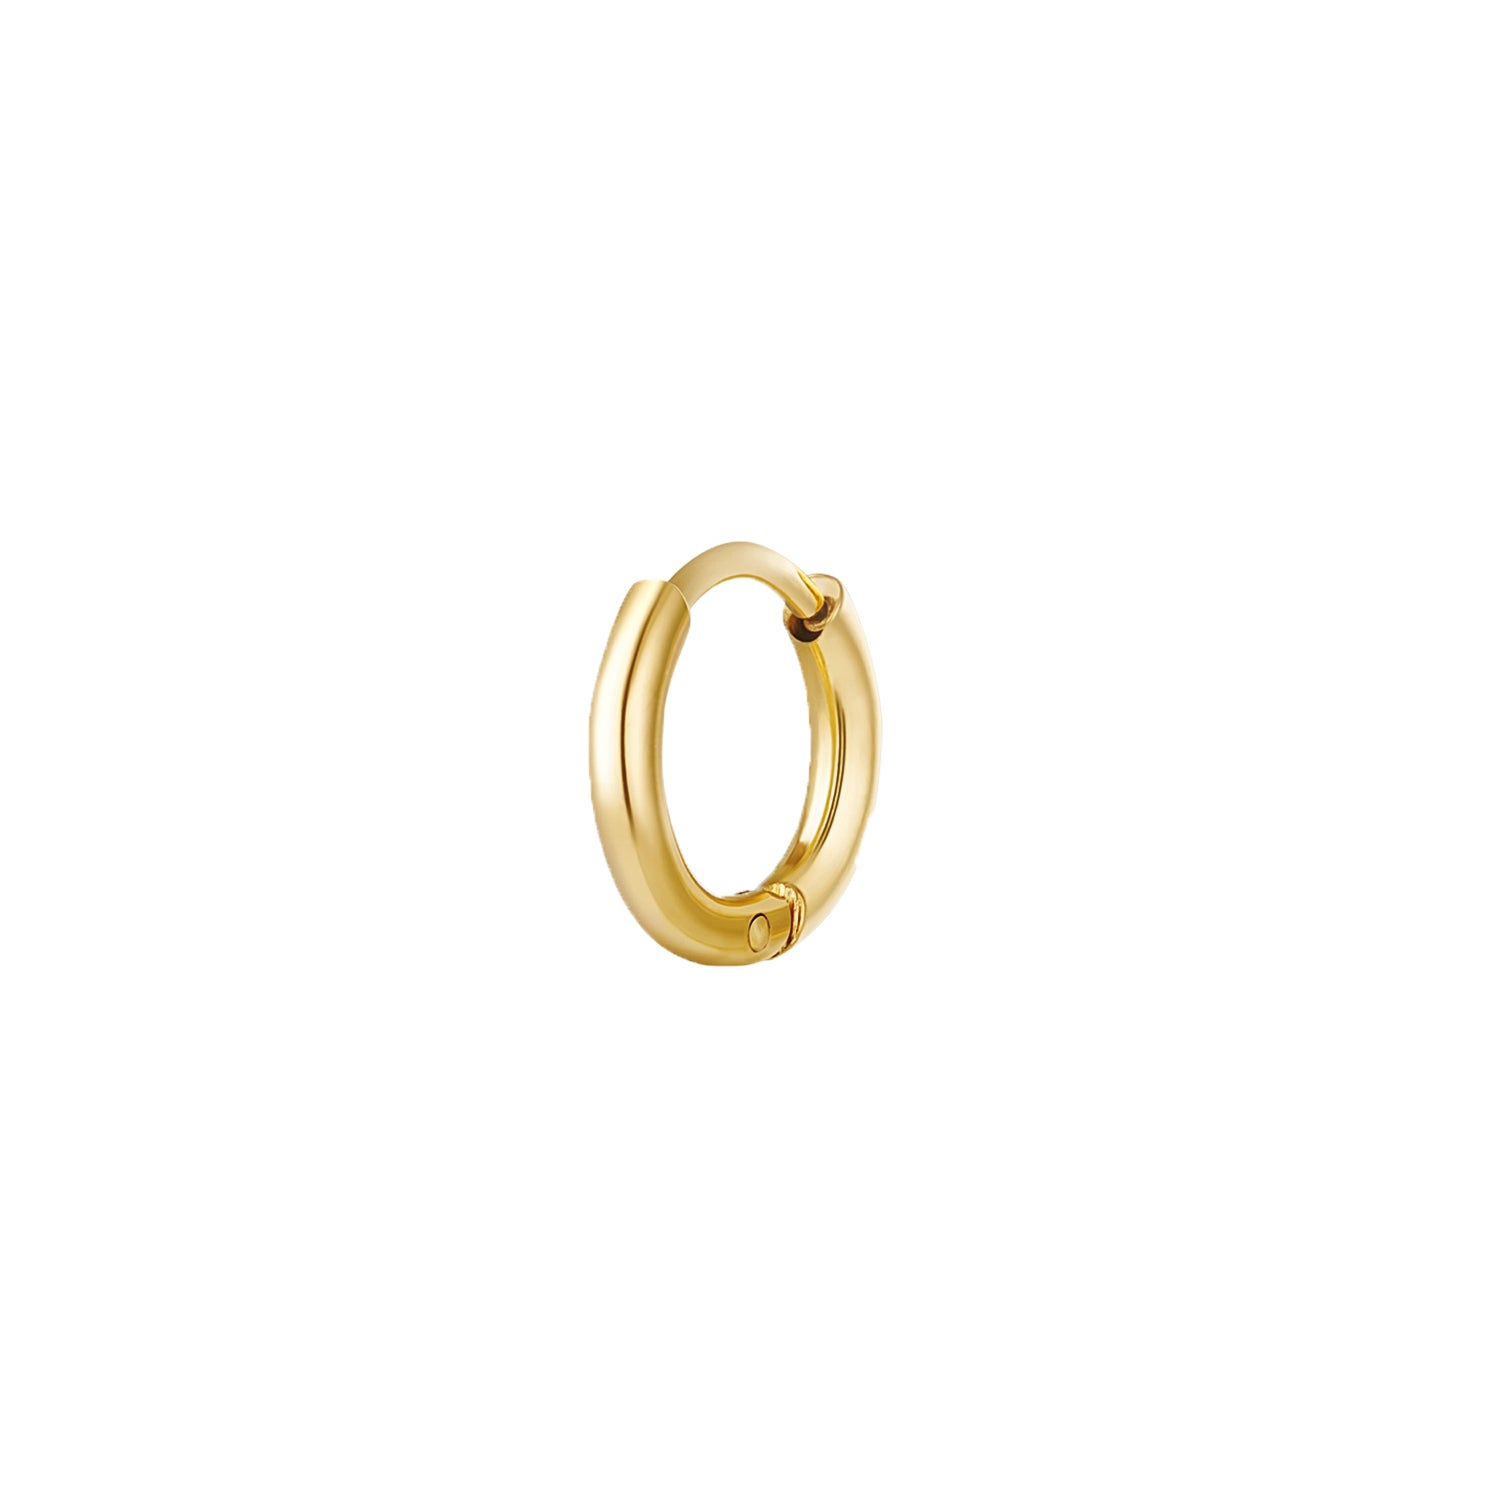 Basic gouden oorbel ring van 12 mm. De oorbel ringen worden per stuk verkocht en zijn gemaakt van gold plated stainless steel. De oorbel ringen verkleuren niet.